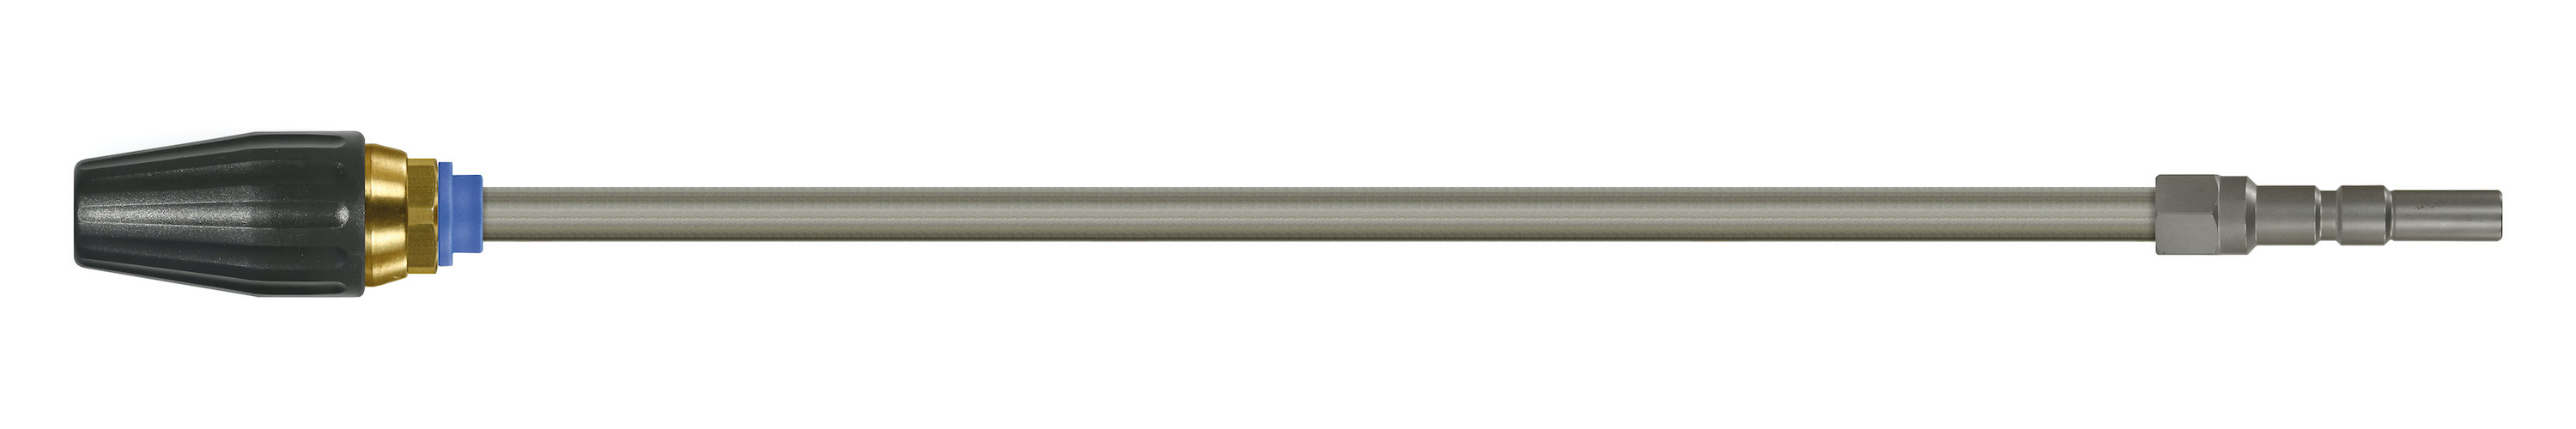 Coupleur KW. Lances tube zingué avec rotabuse ST-357.1. Cône 20°. 100 - 250 bar. Max. 100 °C, Calibre 050.